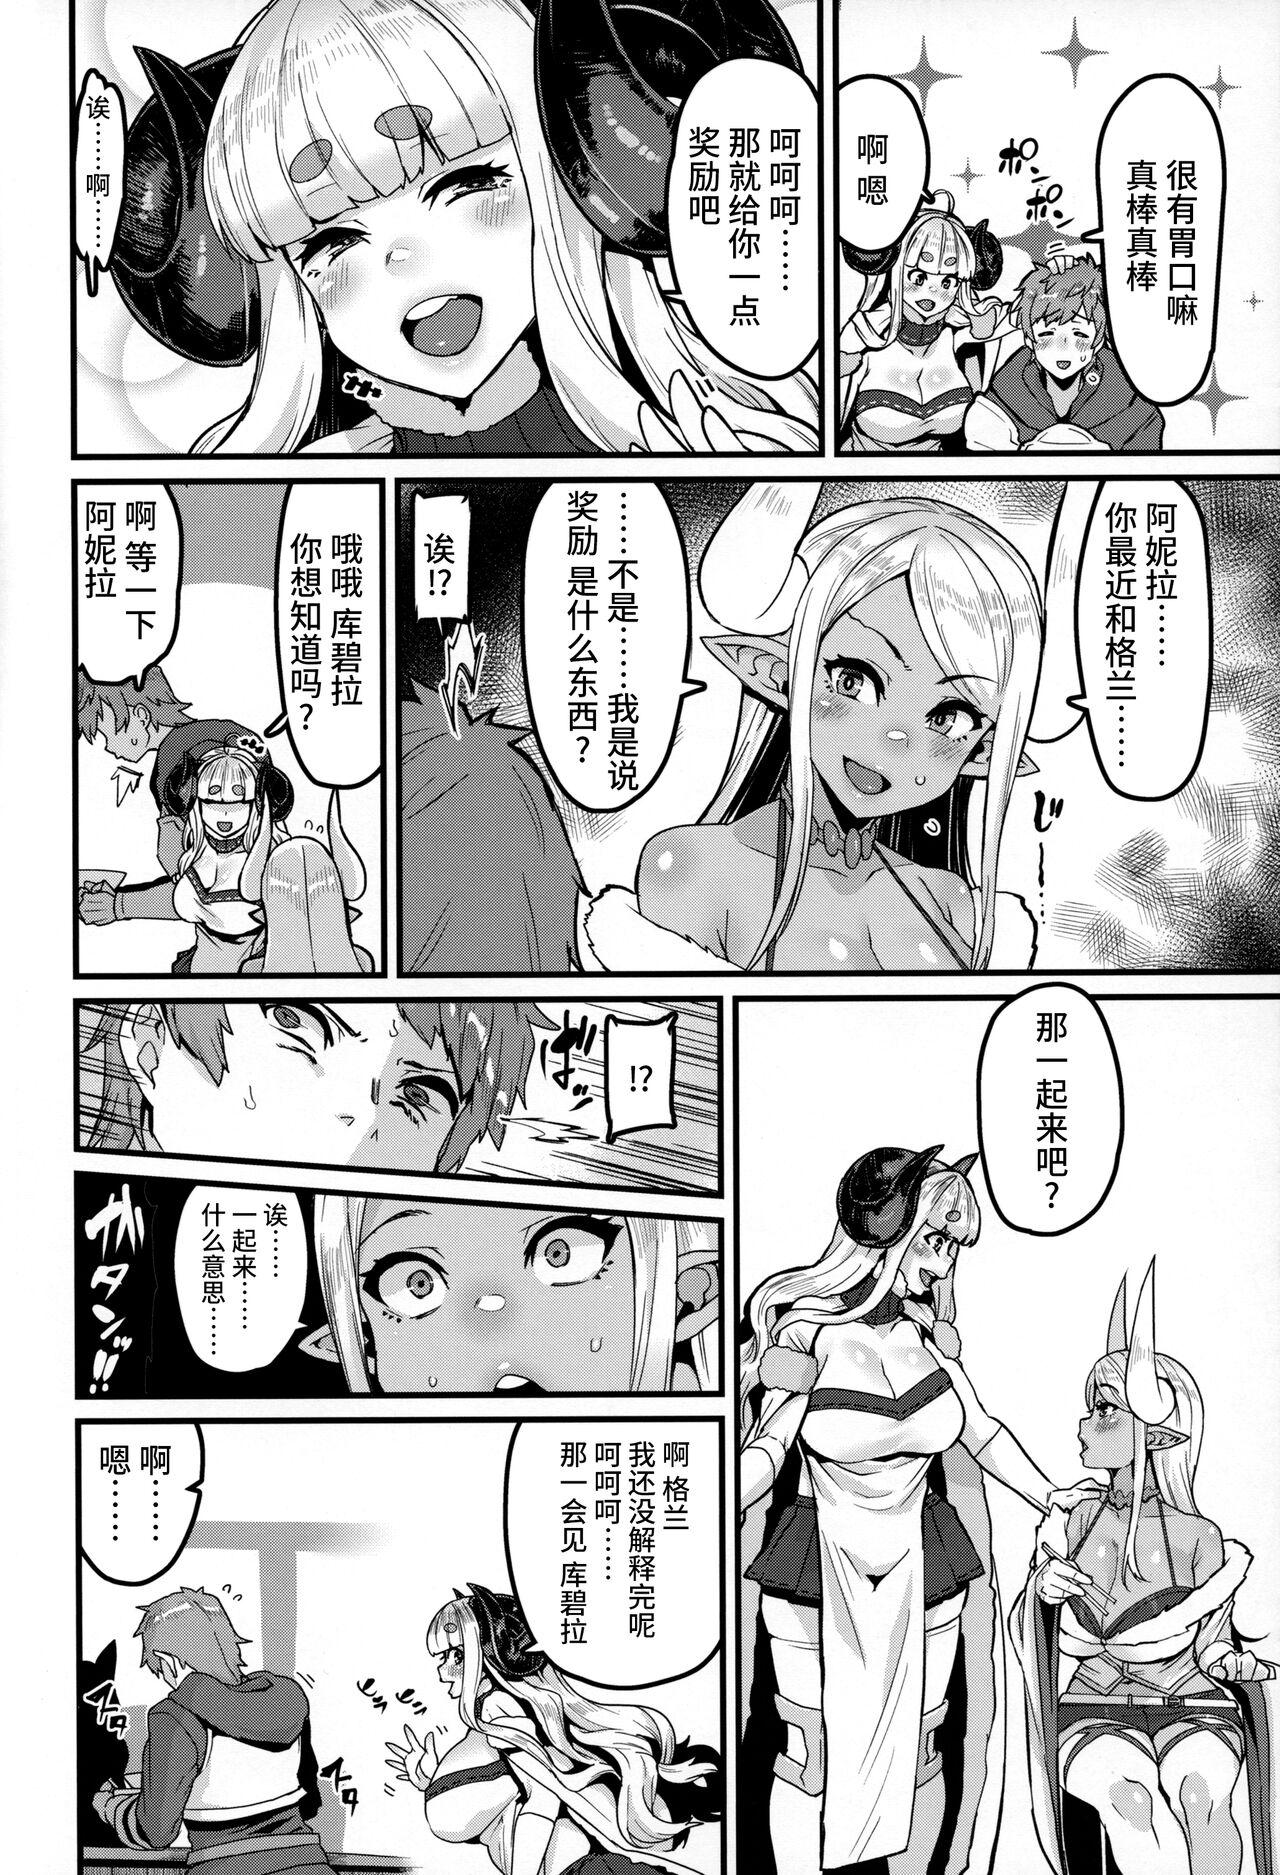 Ladyboy Ama Ama Shimashou ne - Granblue fantasy Arabe - Page 6